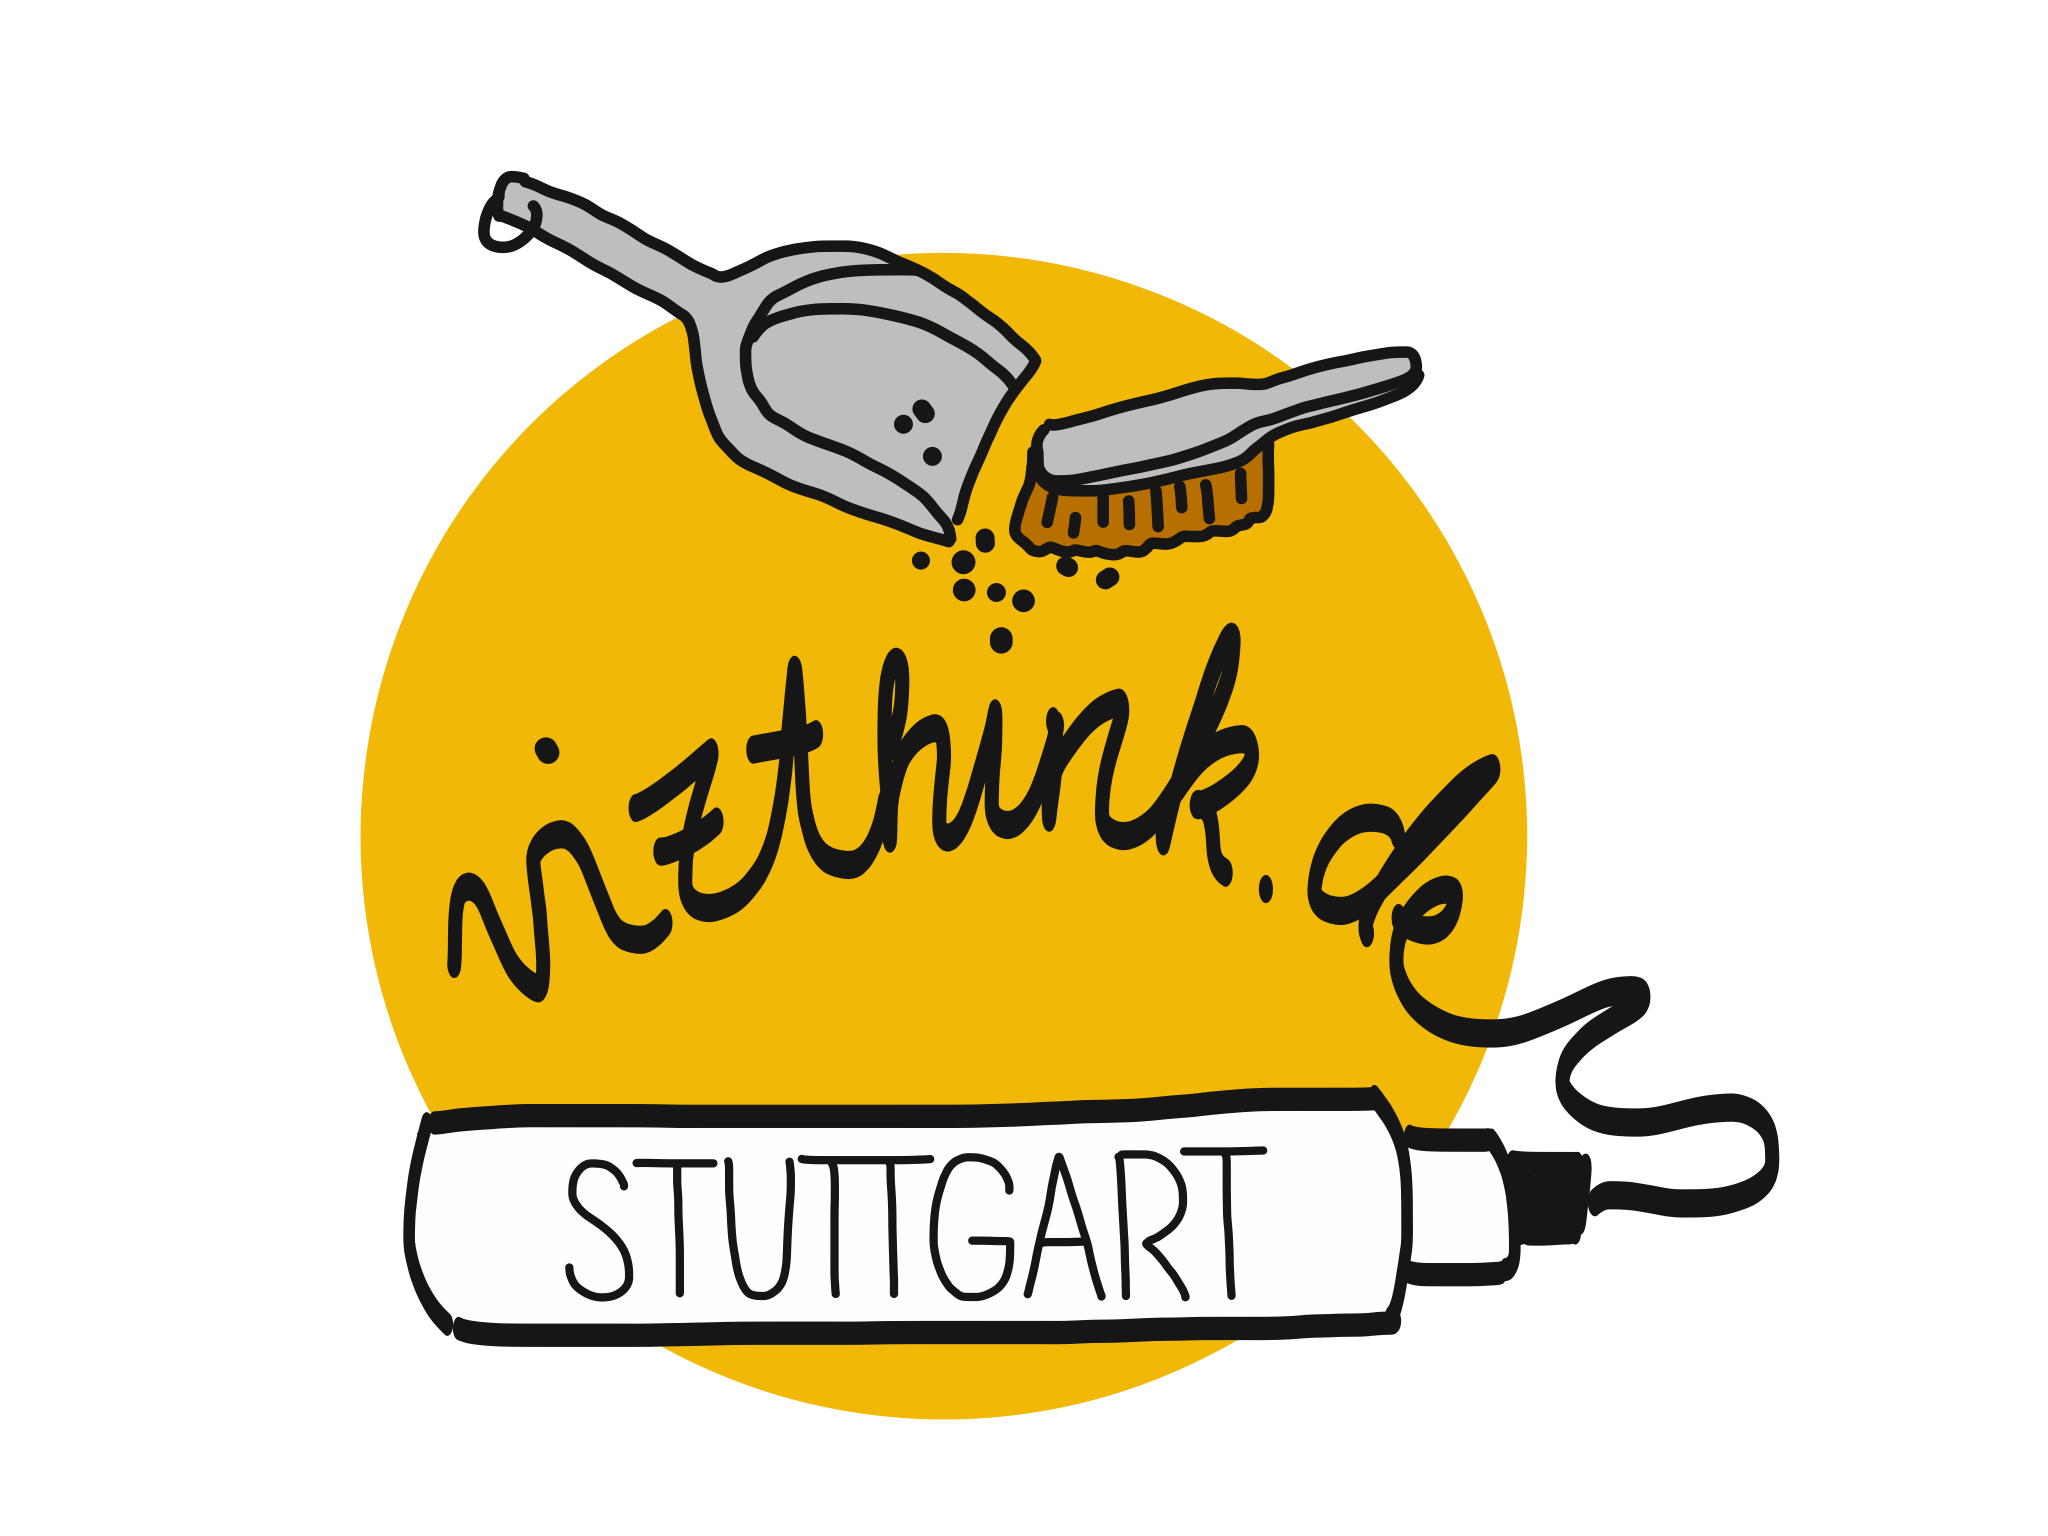 vizthink_stuttgart